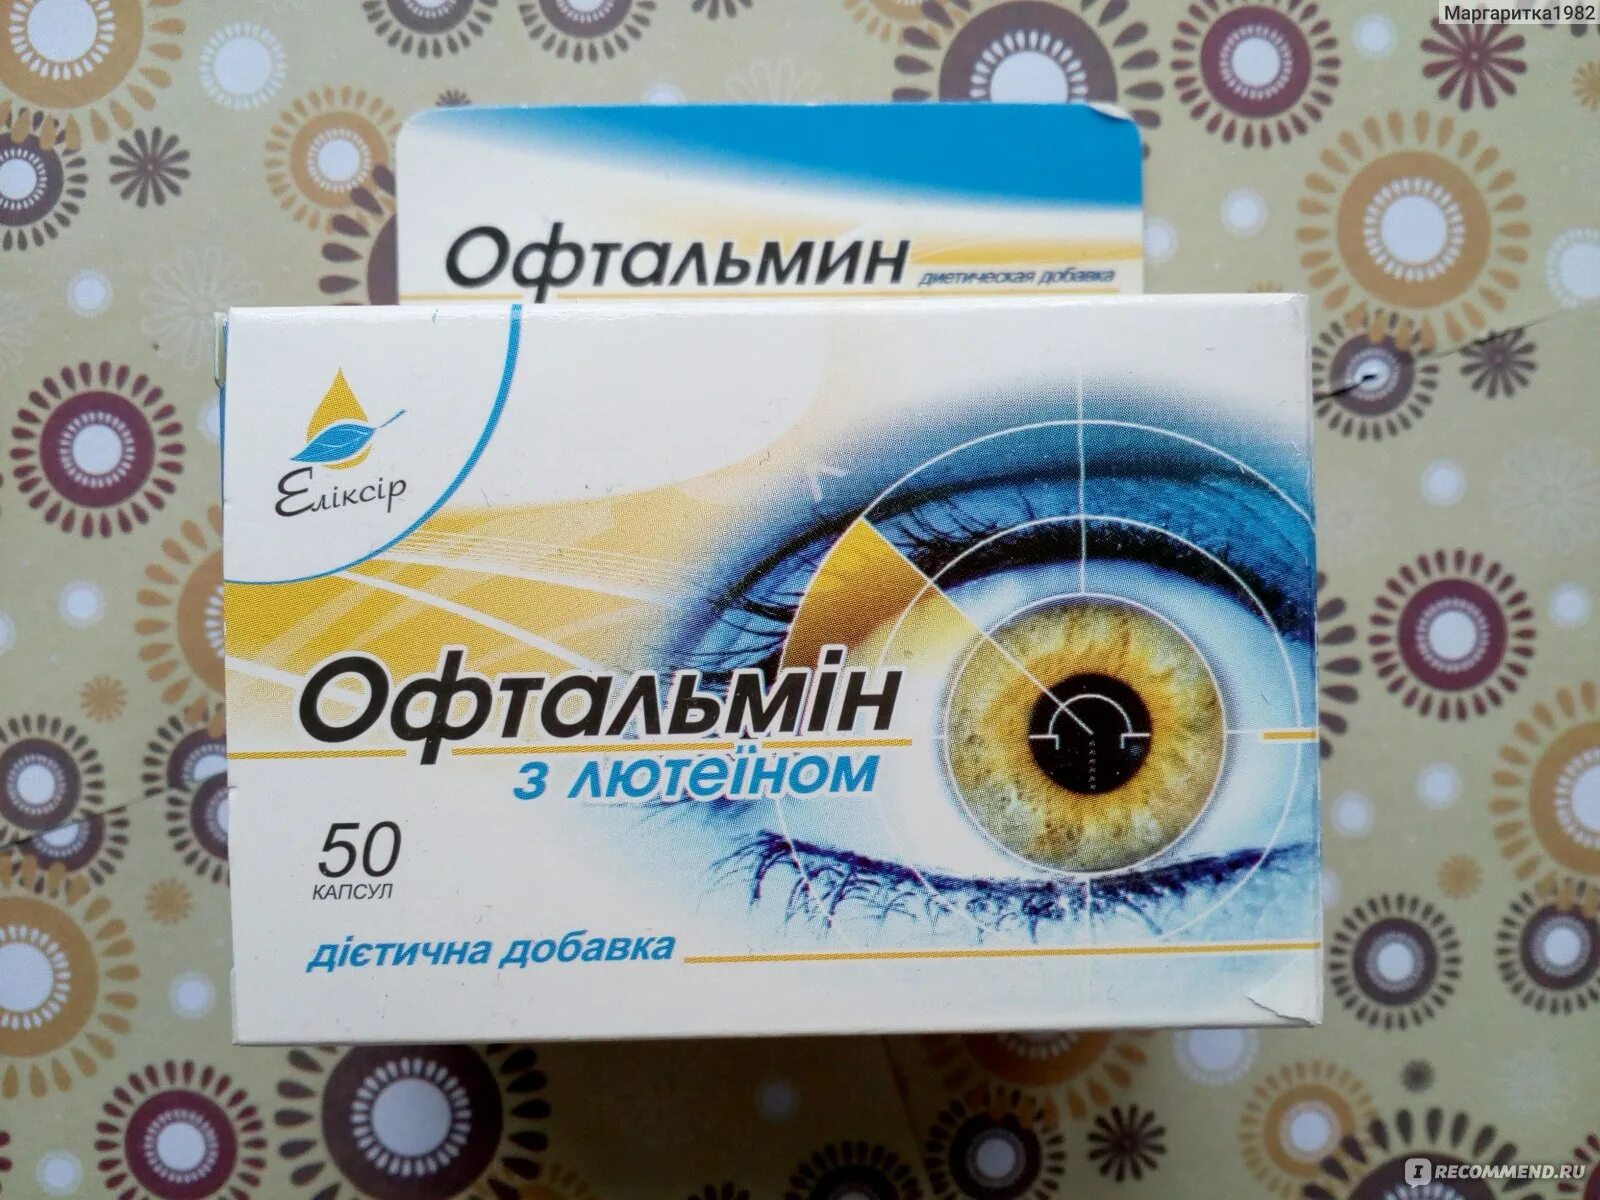 Офталамин инструкция. Офтальмин. Офтальмин таблетки. Офтальмин для глаз. Витамины для глаз офталамин.